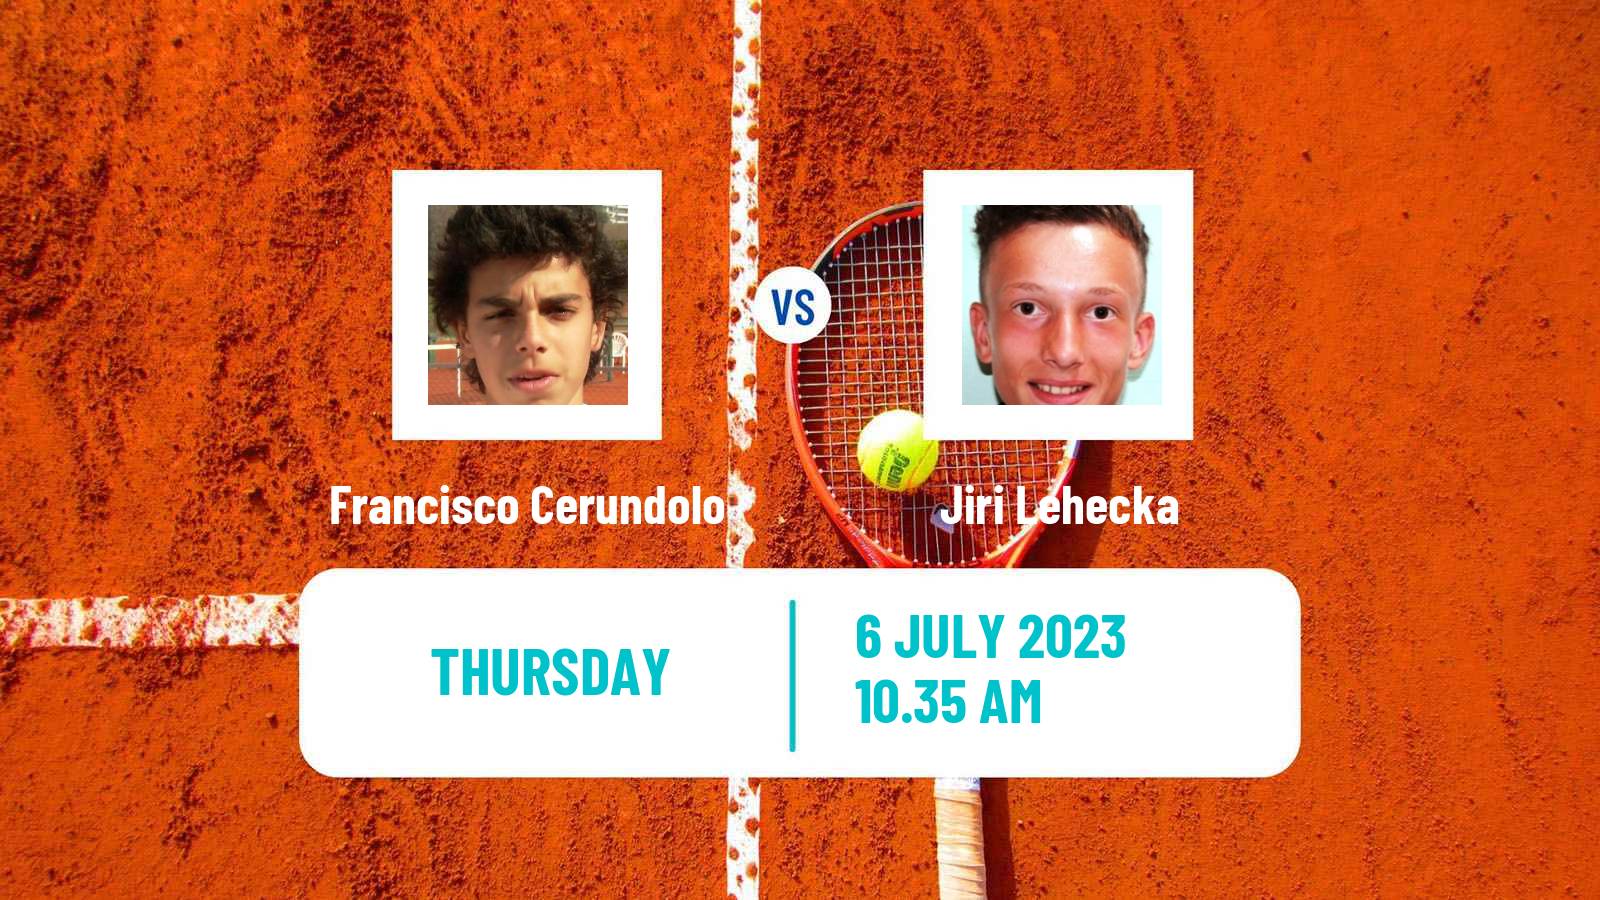 Tennis ATP Wimbledon Francisco Cerundolo - Jiri Lehecka